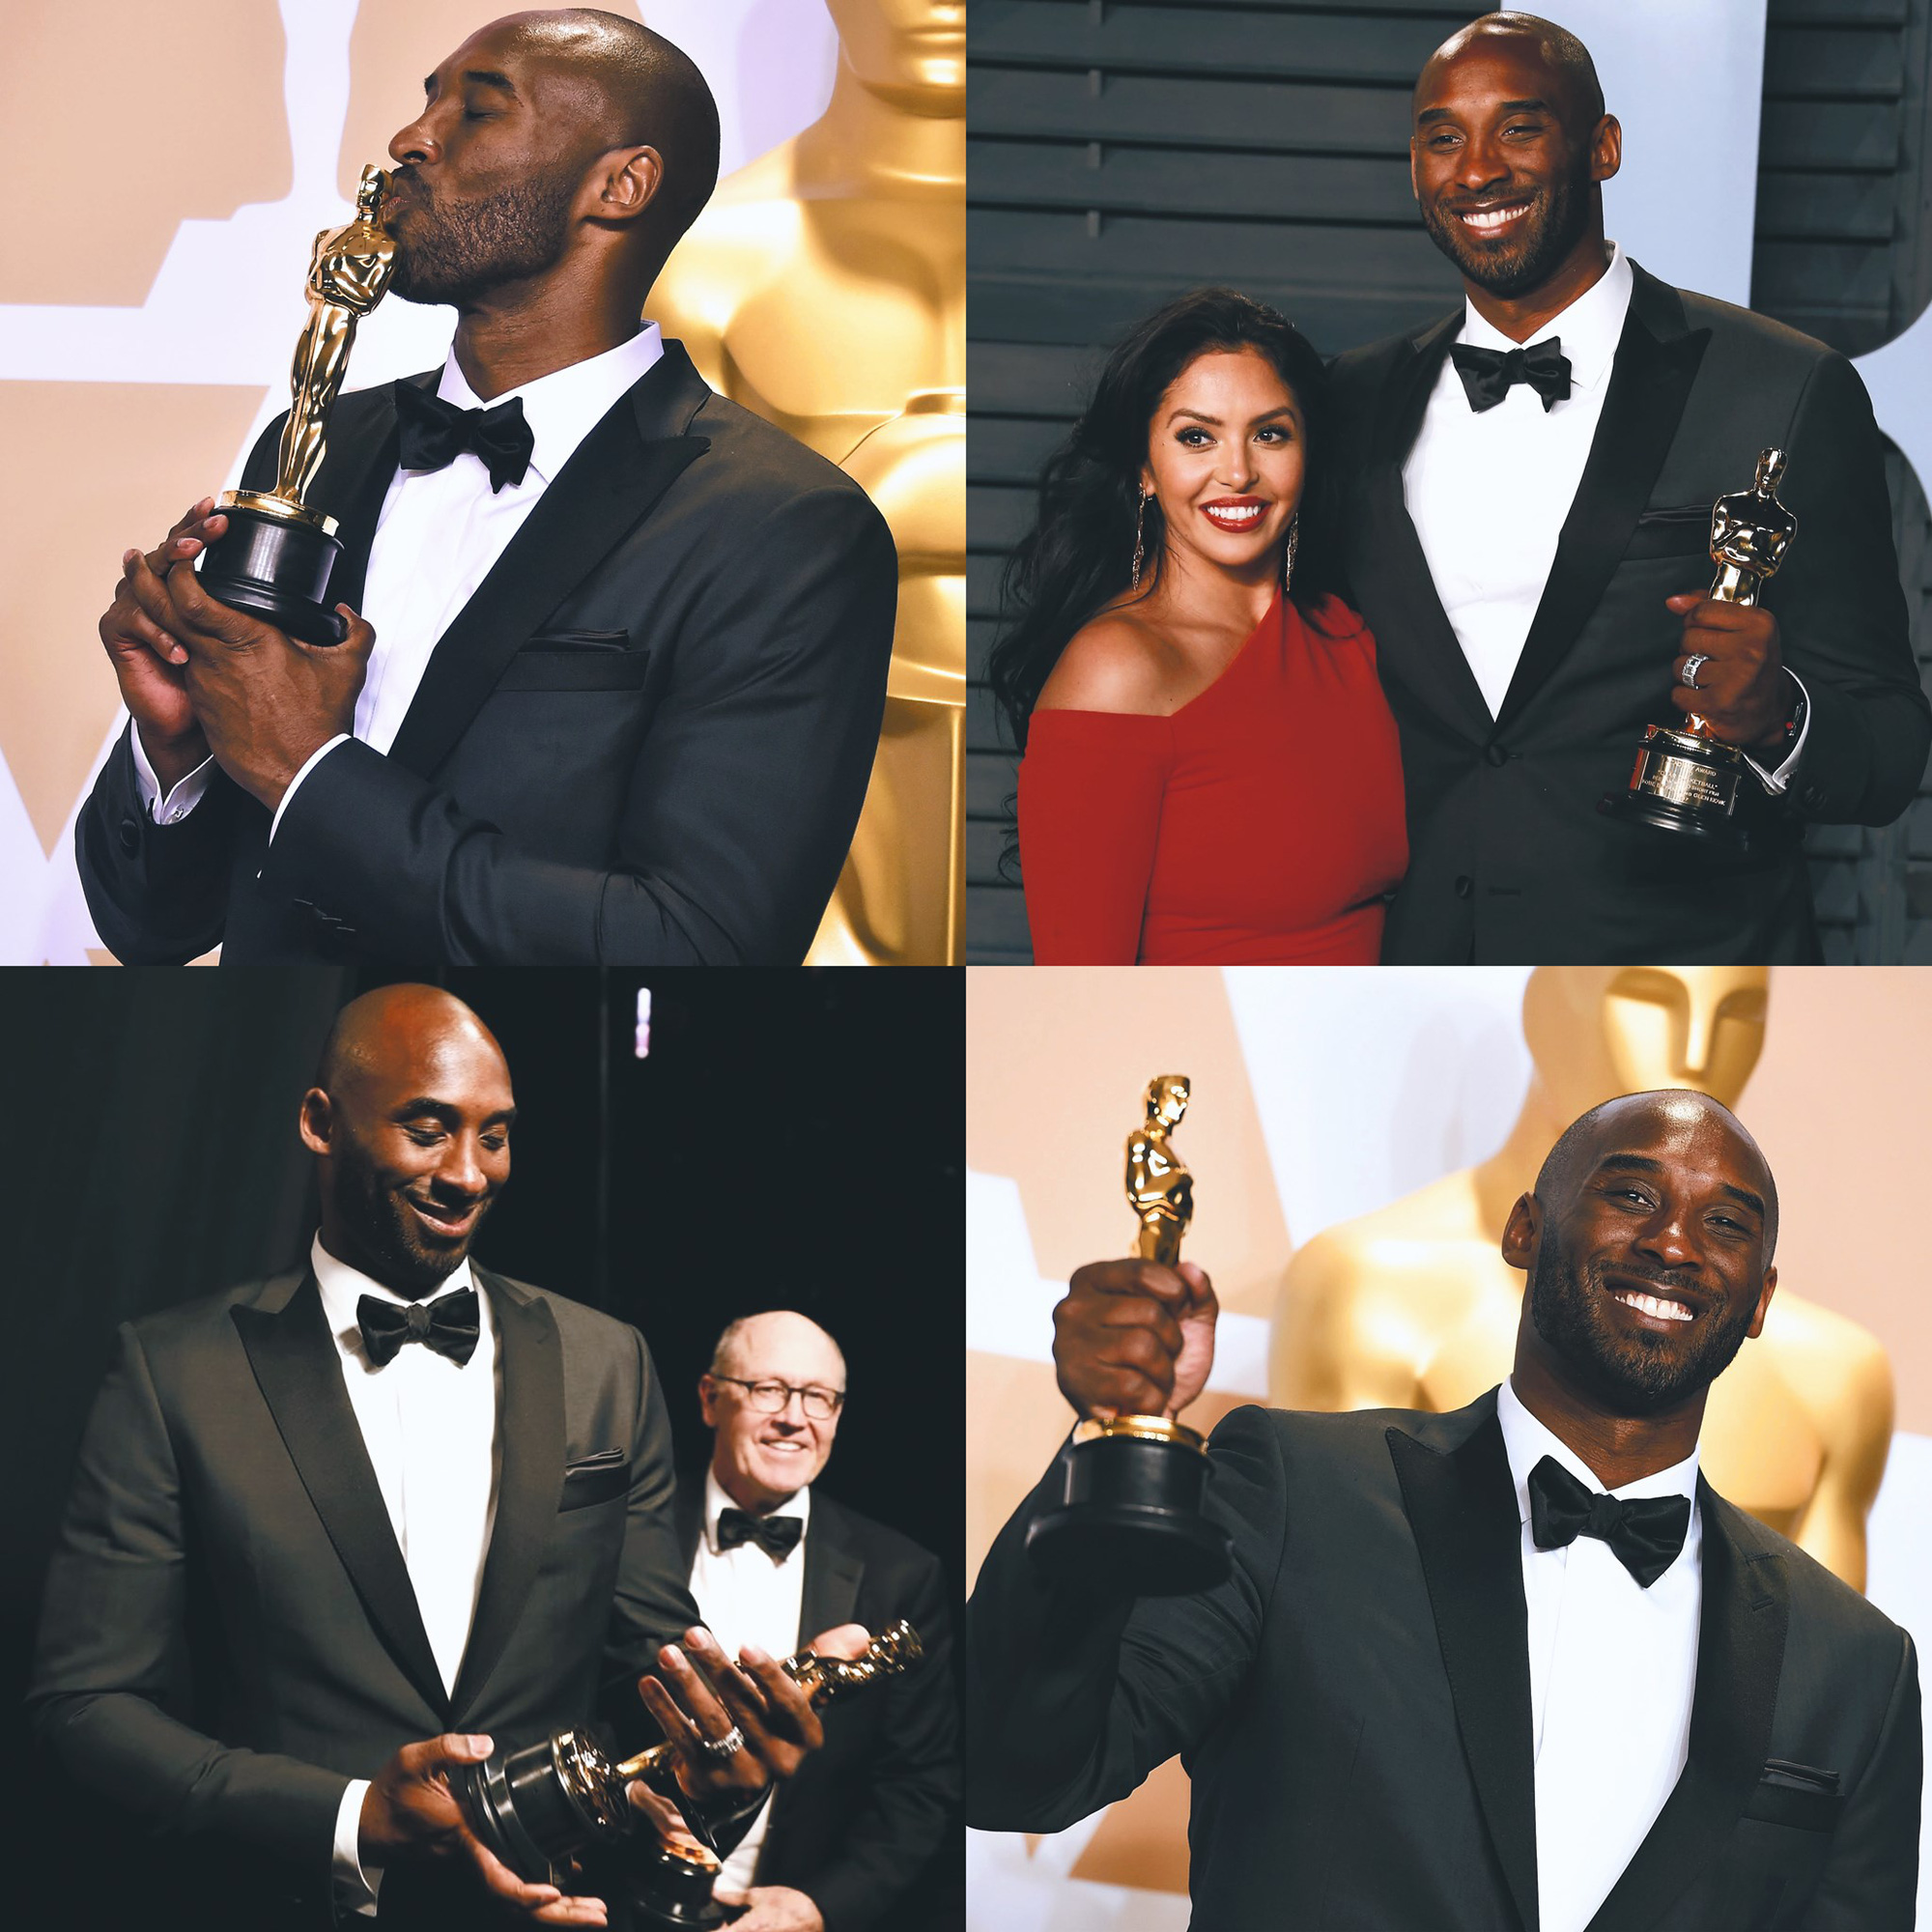 Đạo diễn Spike Lee mặc trang phục đặc biệt để tri ân huyền thoại Kobe Bryant tại lễ trao giải Oscar 2020 - Ảnh 3.